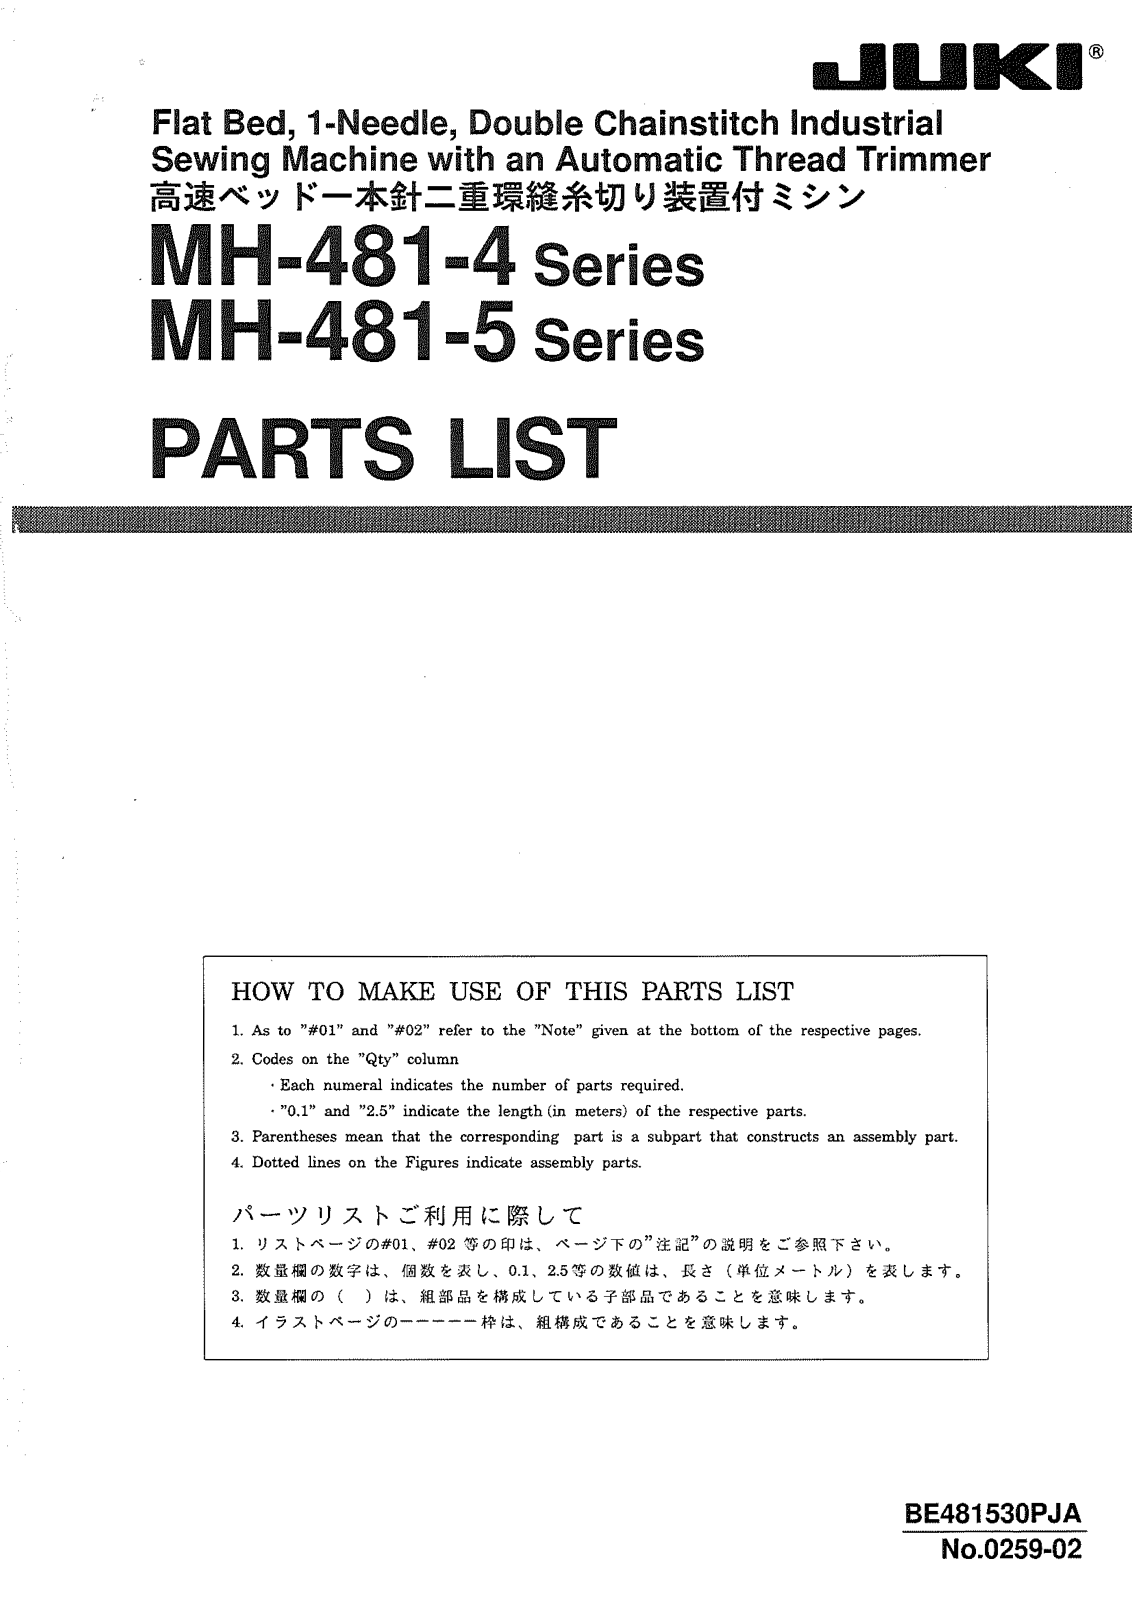 JUKI MH-481-4, MH-481-5 Parts List